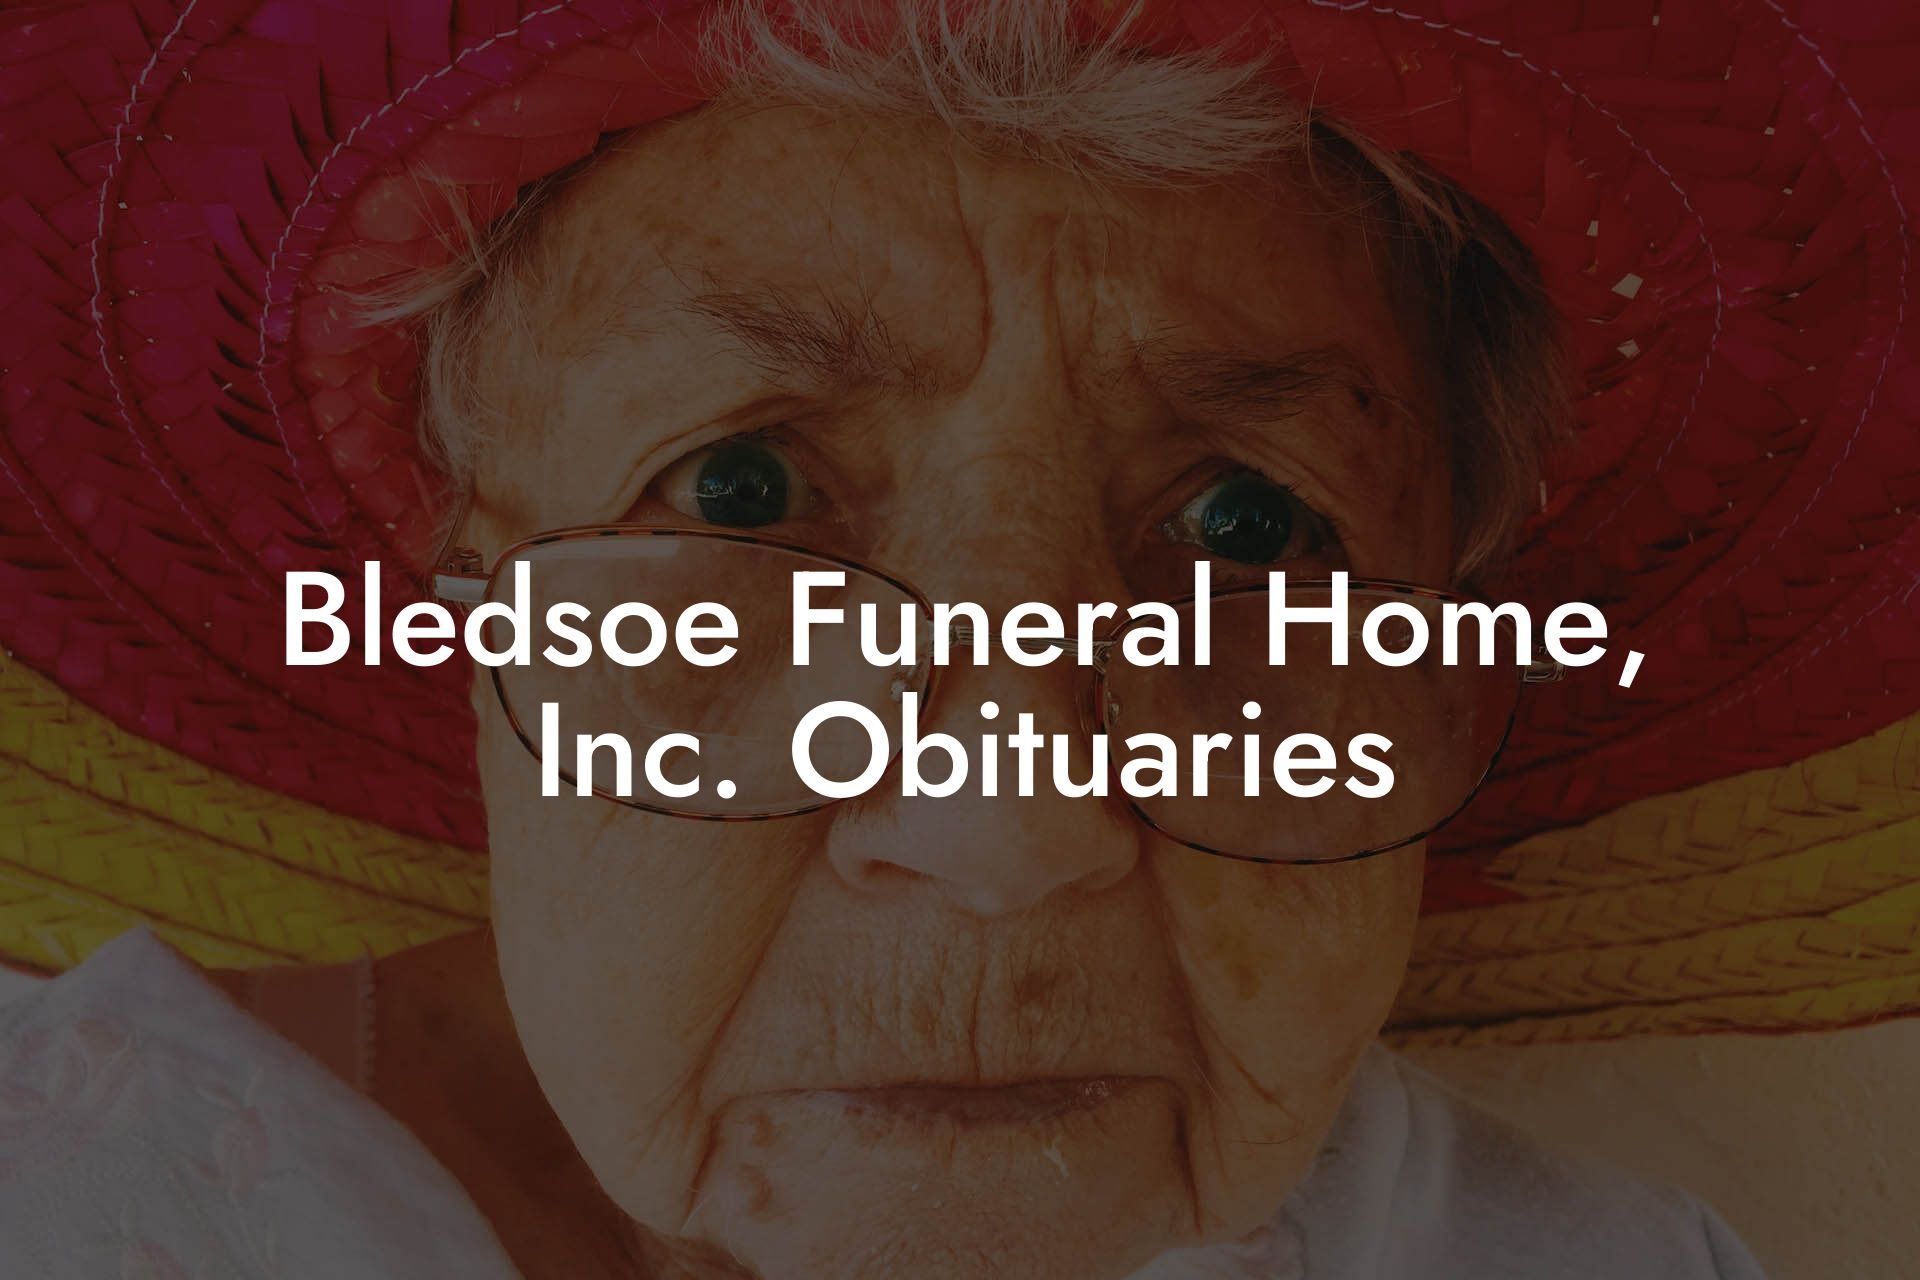 Bledsoe Funeral Home, Inc. Obituaries